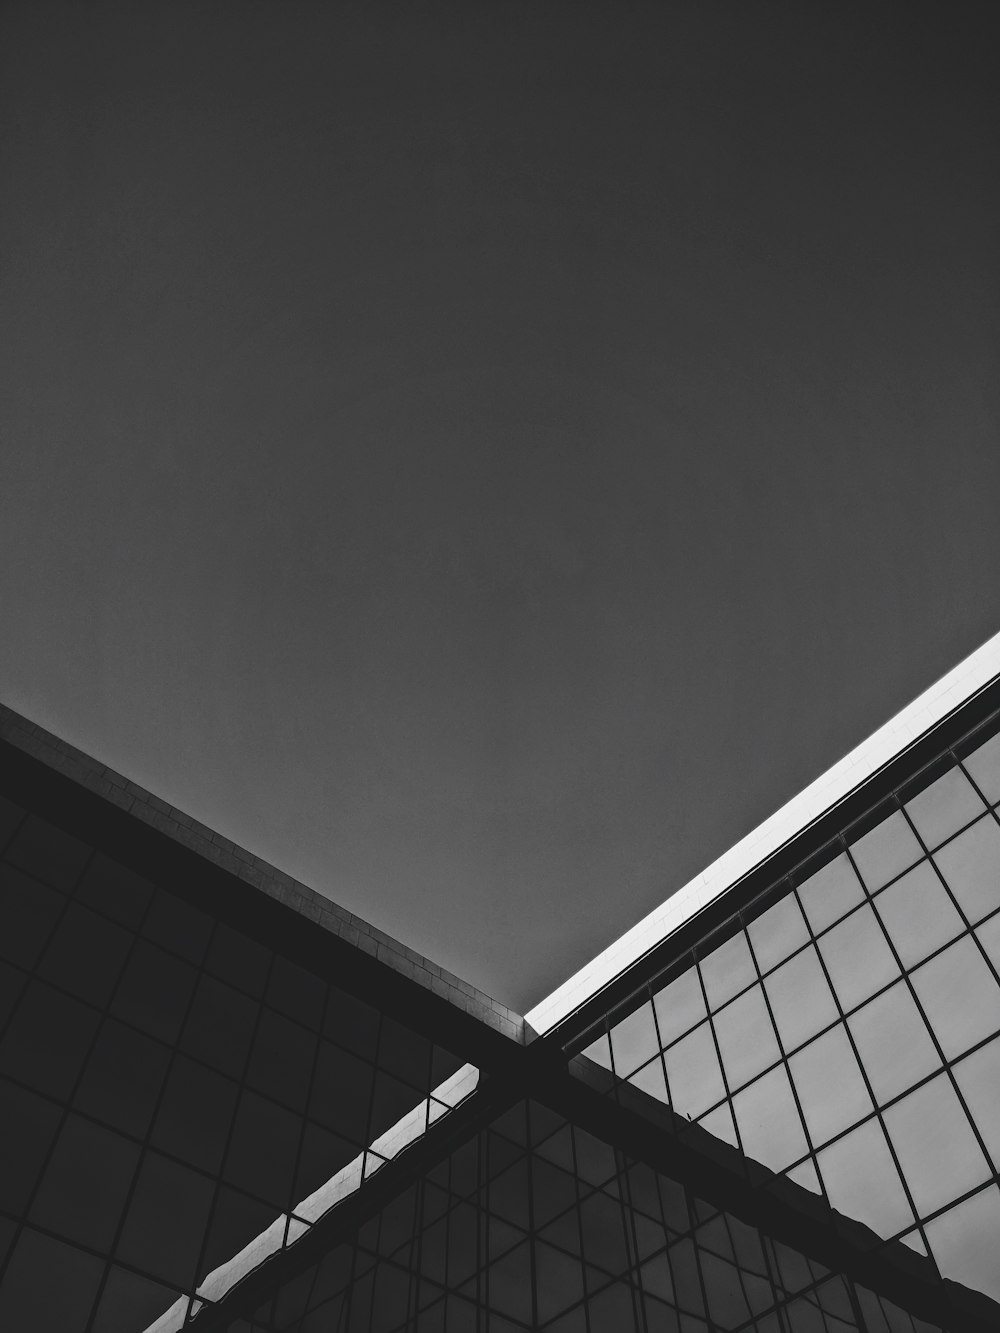 건물 지붕의 흑백 사진